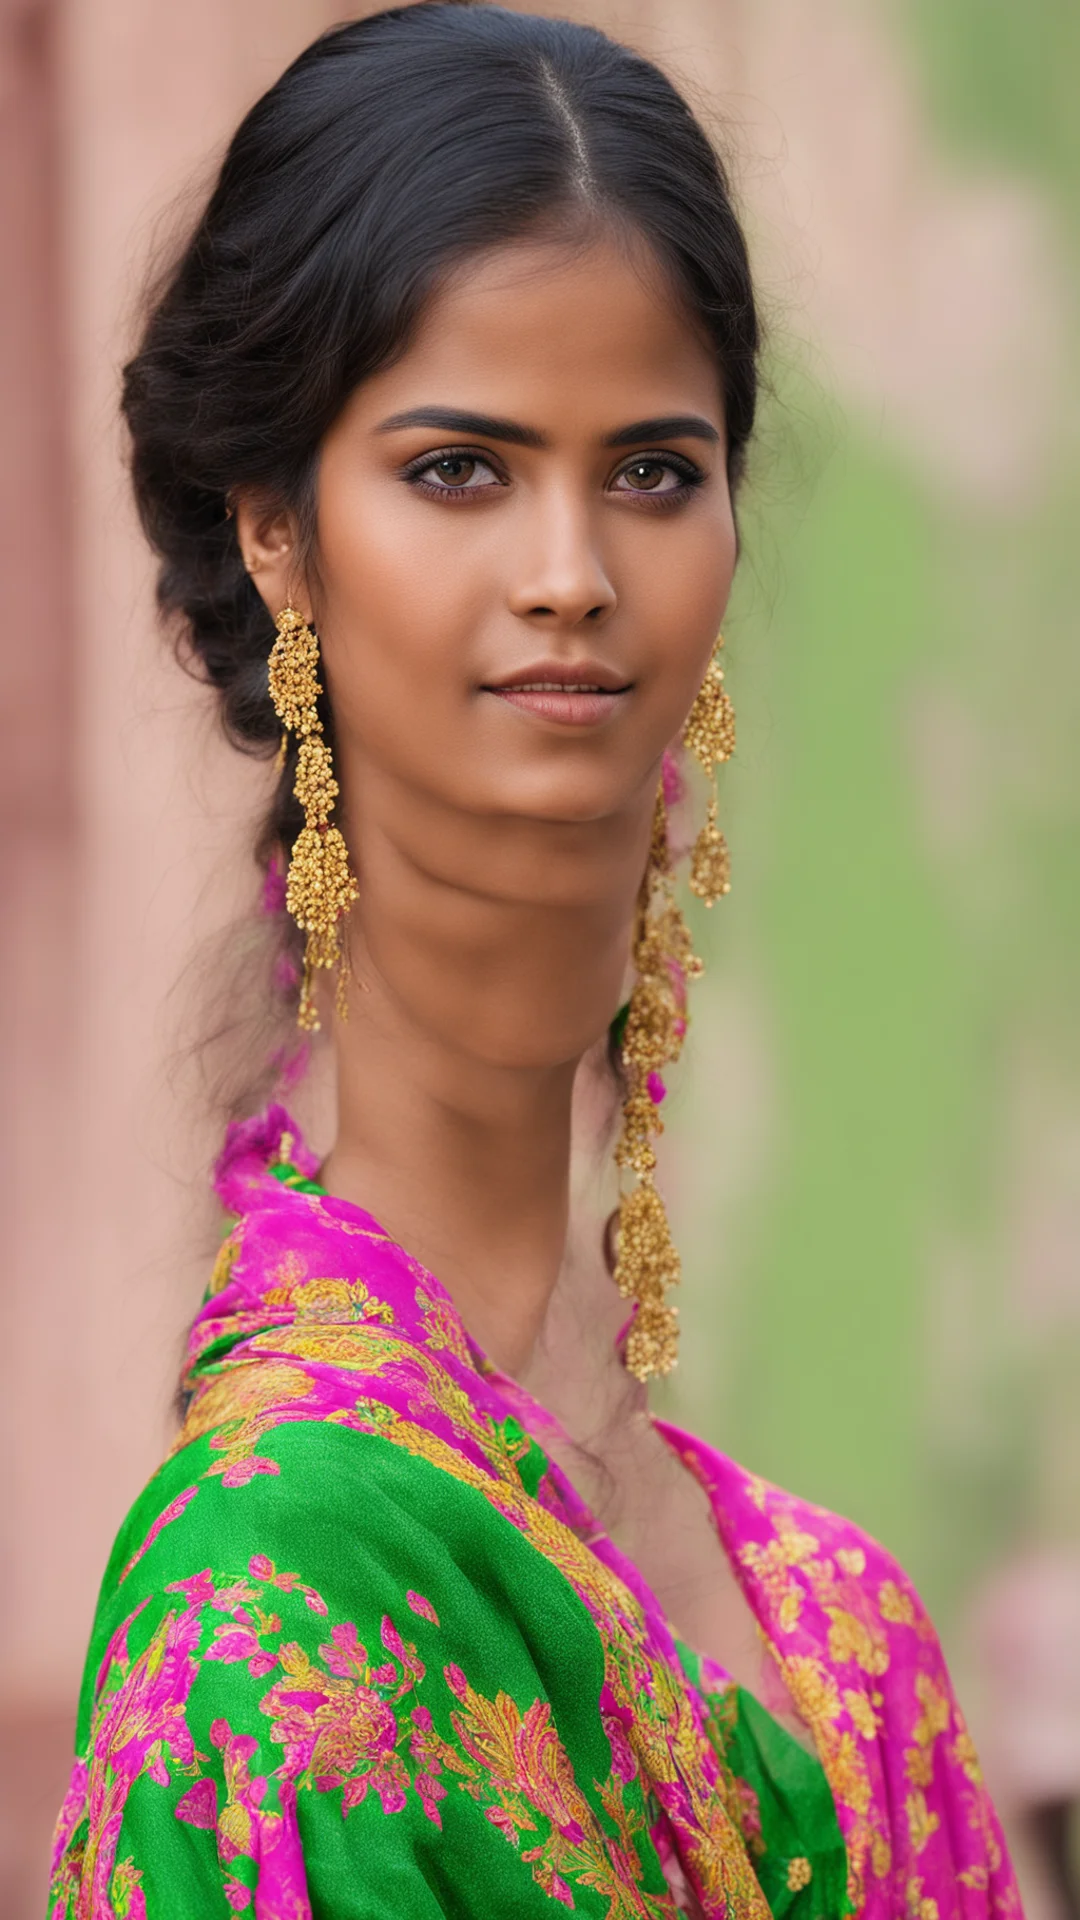 aiindian girl in saree tall